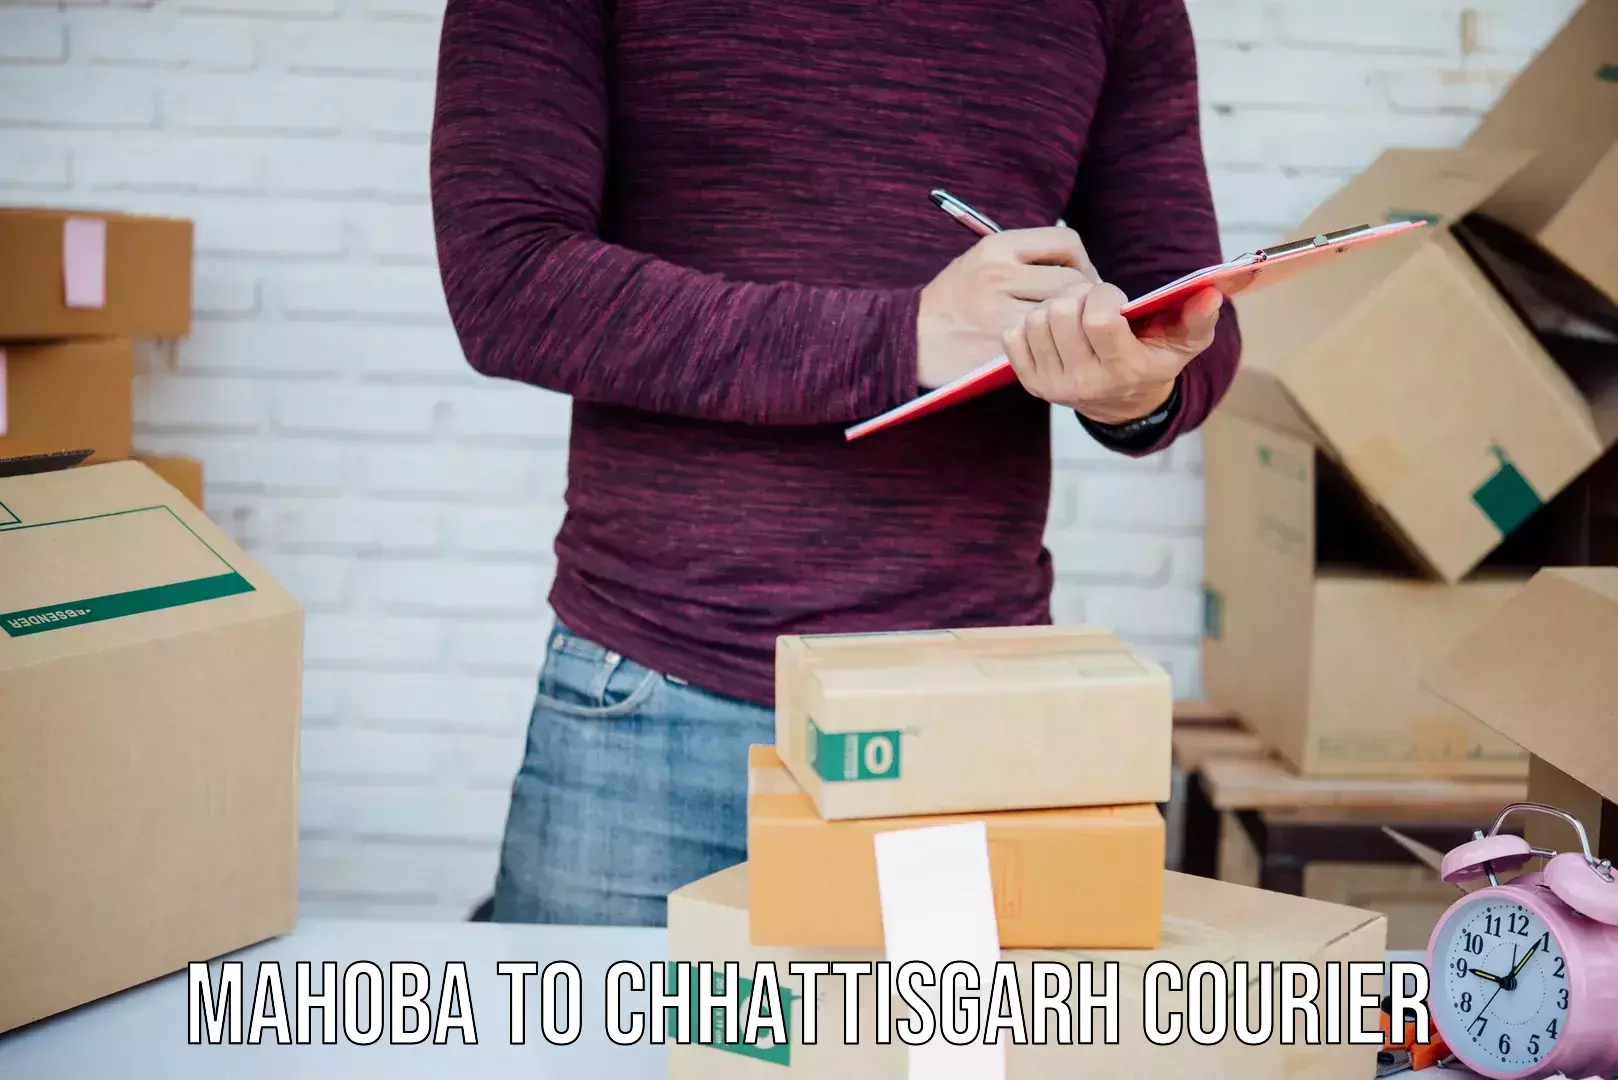 Supply chain delivery Mahoba to Chhattisgarh